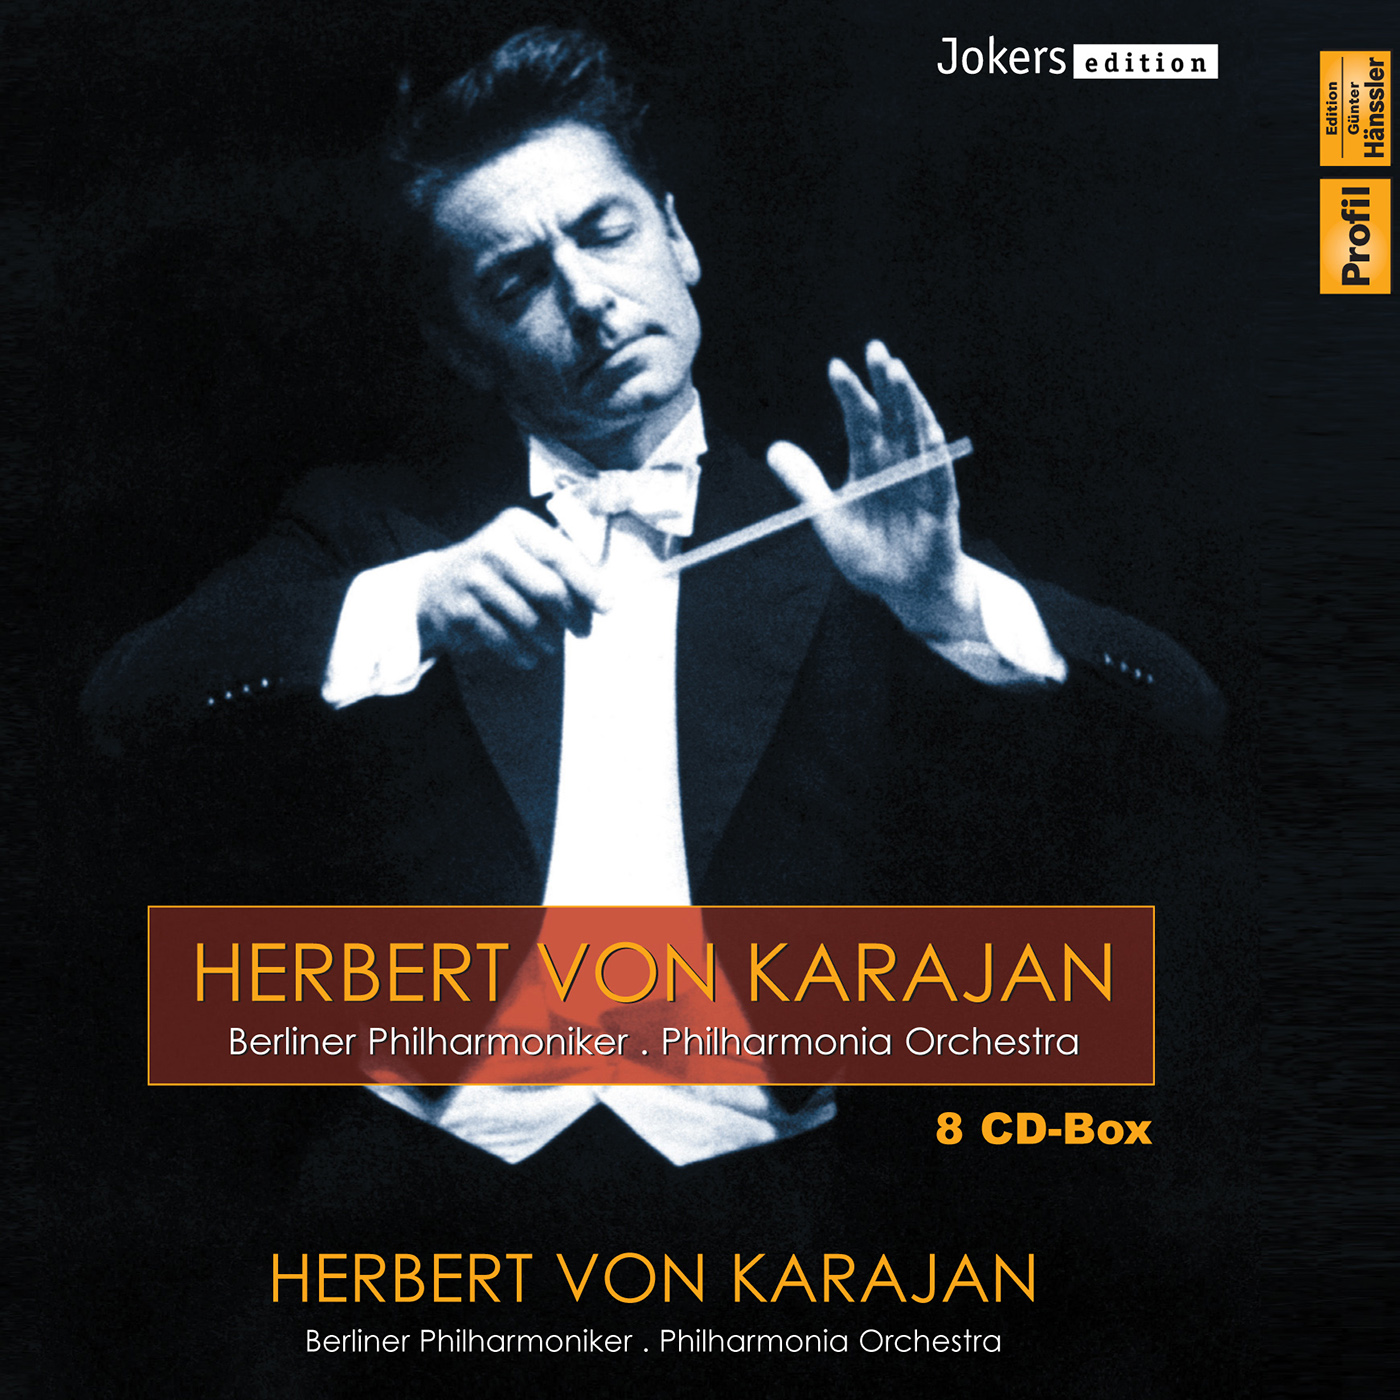 Orchestral Music - HANDEL, G.F. / BEETHOVEN, L. van / BRAHMS, J. / MOZART, W.A. / SCHUBERT, F. / SCHUMANN, R. / LISZT, F. / MUSSORGSKY, M. (Karajan)